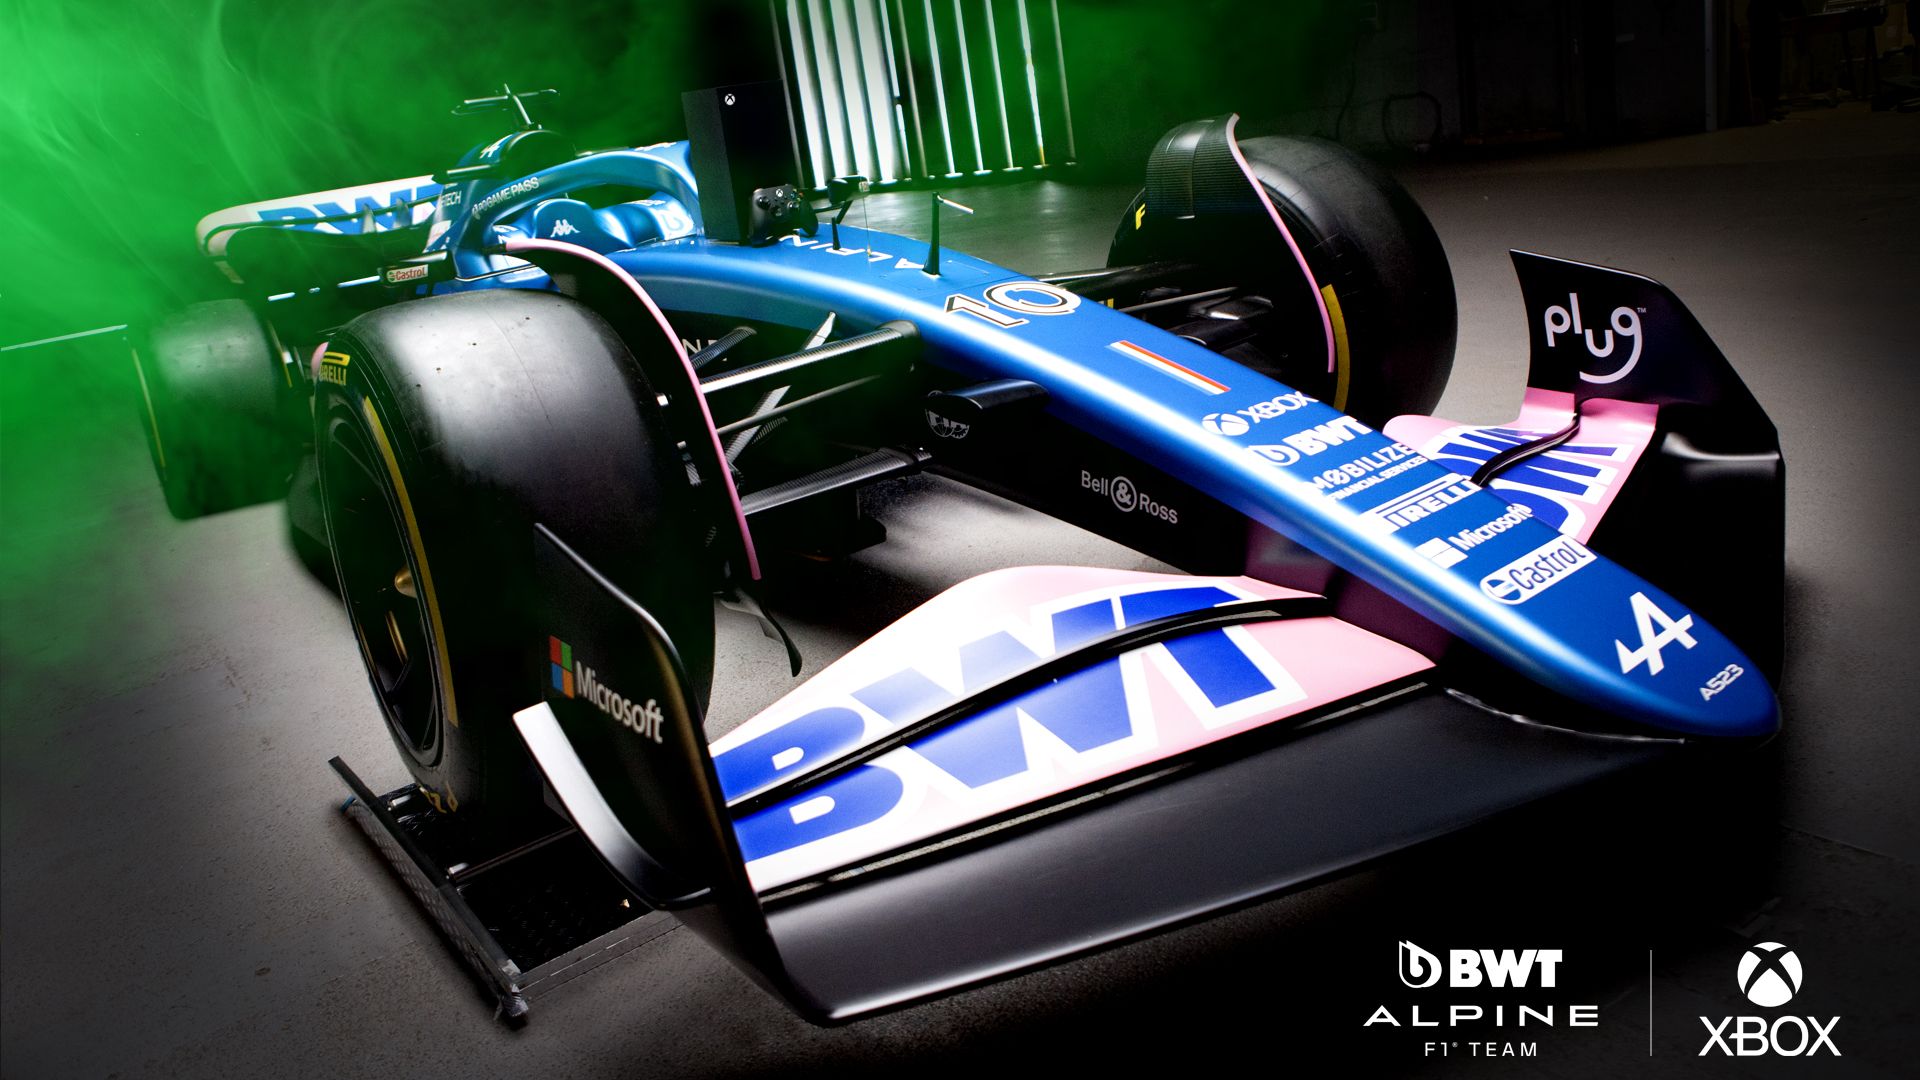 Video For Xbox devient le partenaire console officiel de l’écurie BWT Alpine F1 Team